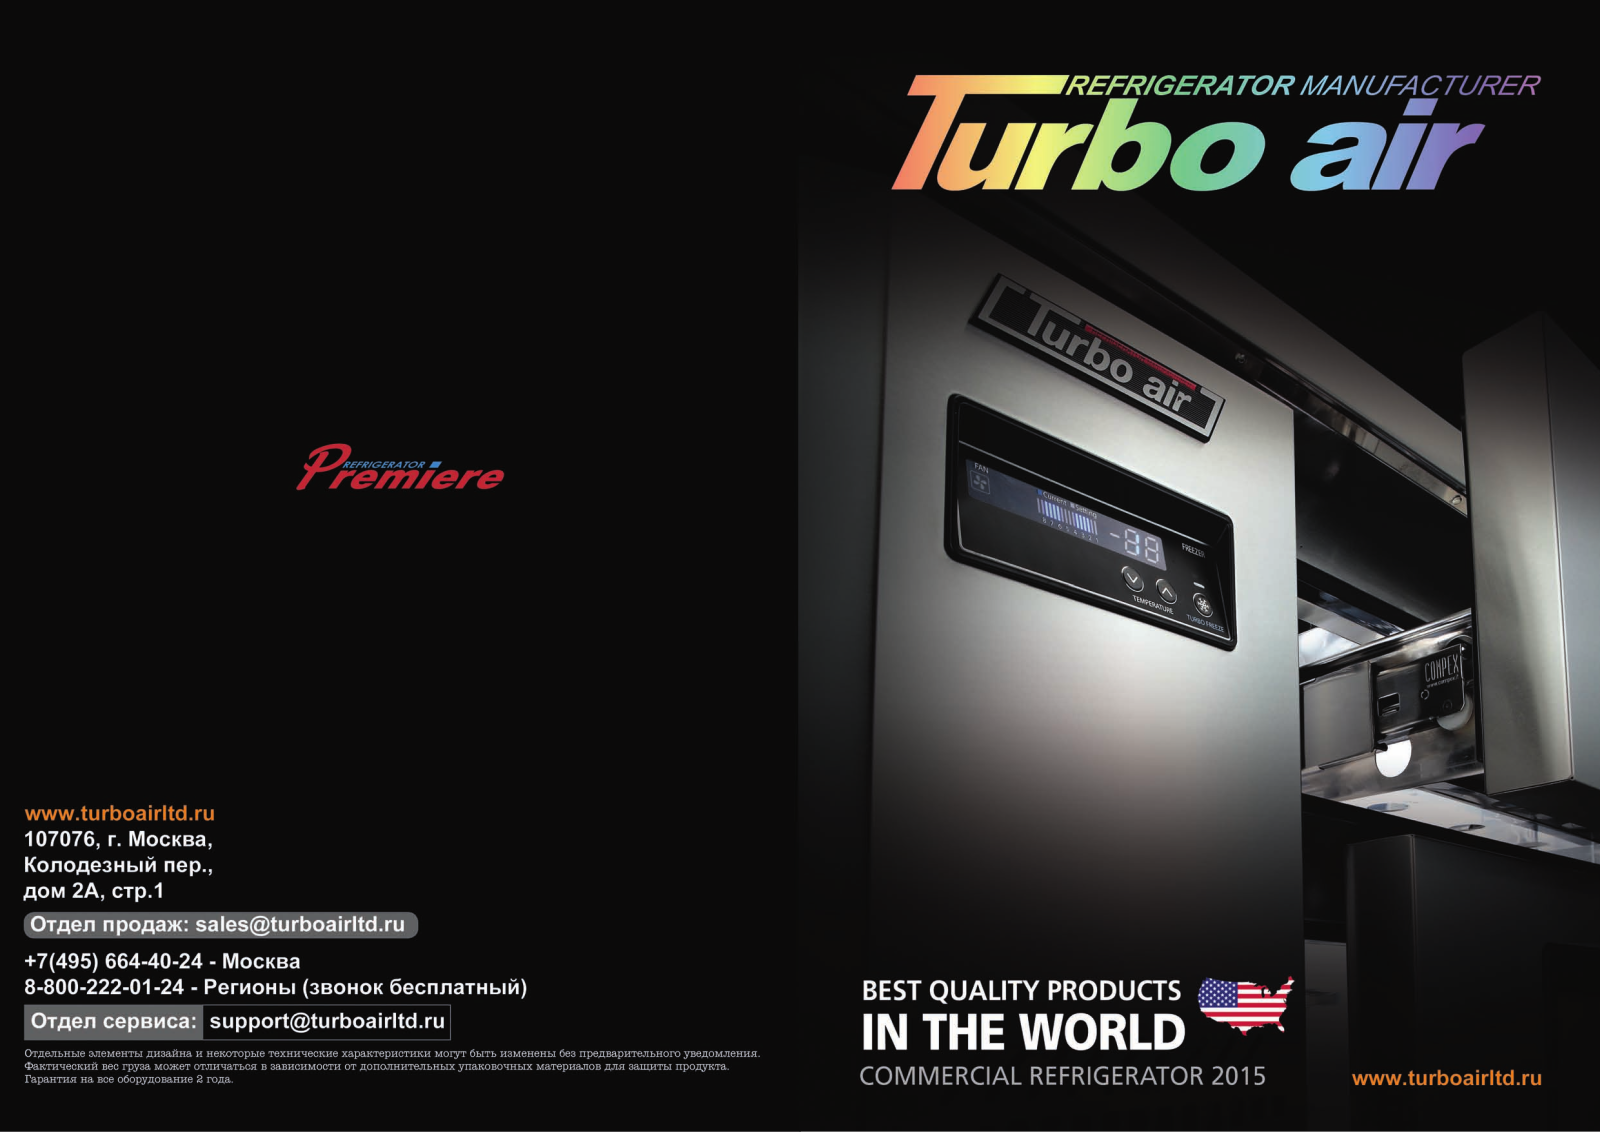 Turbo air FSU-48-2D-4, FMU-60-2D-4, KUR18-3D-9, FMU-72-2D-6, FPT-67-D2-4 Catalog & Dimensions